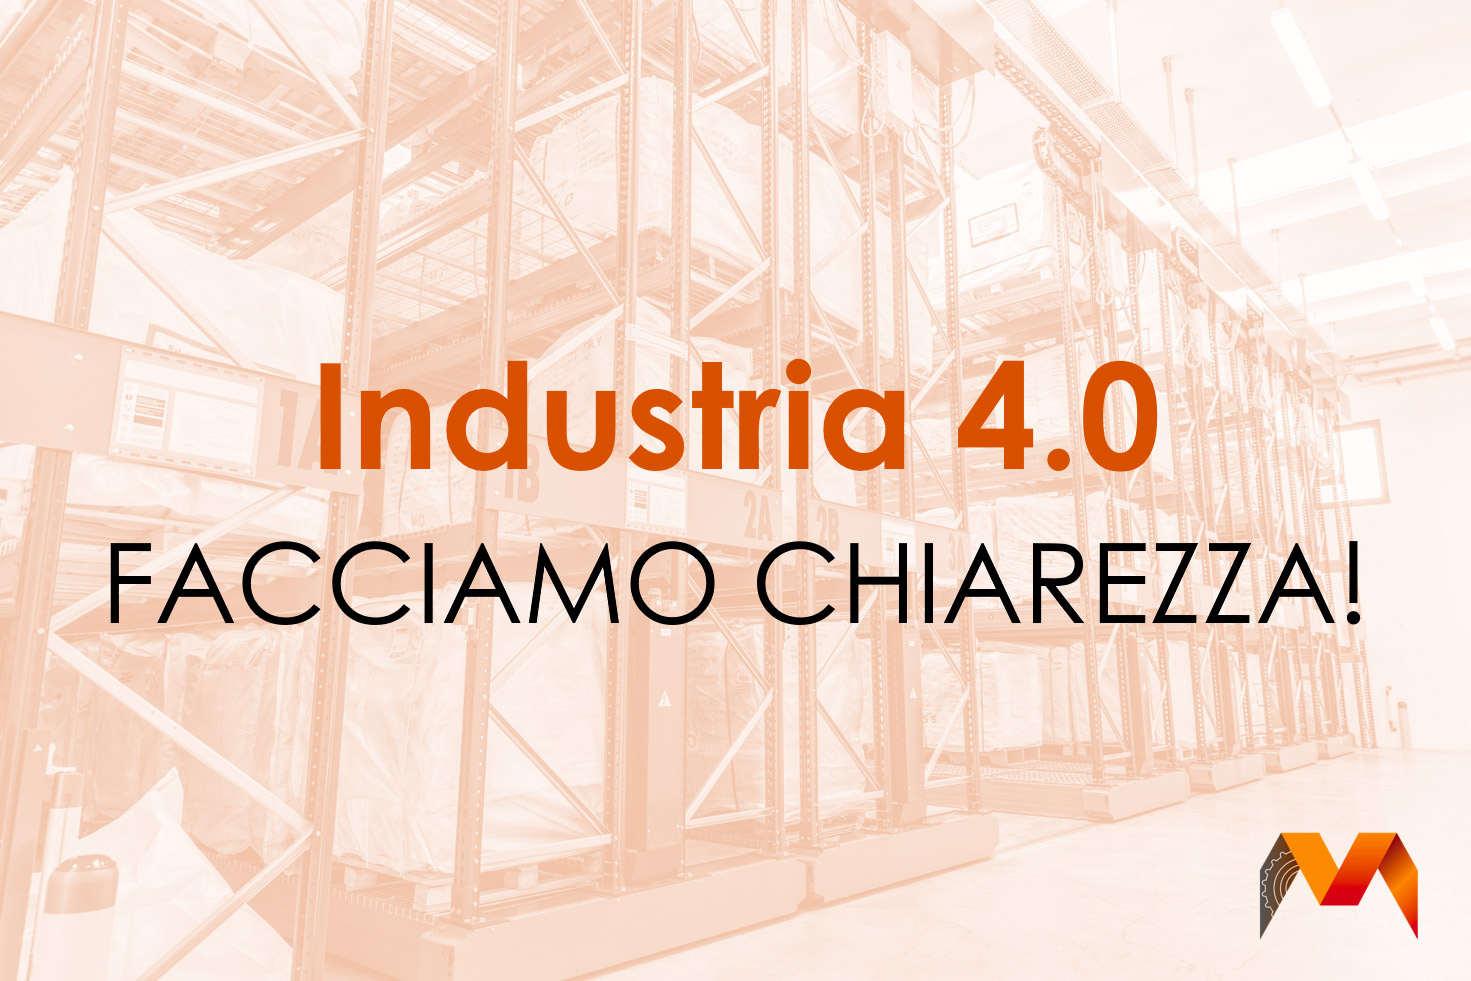 Industria 4.0: facciamo chiarezza!